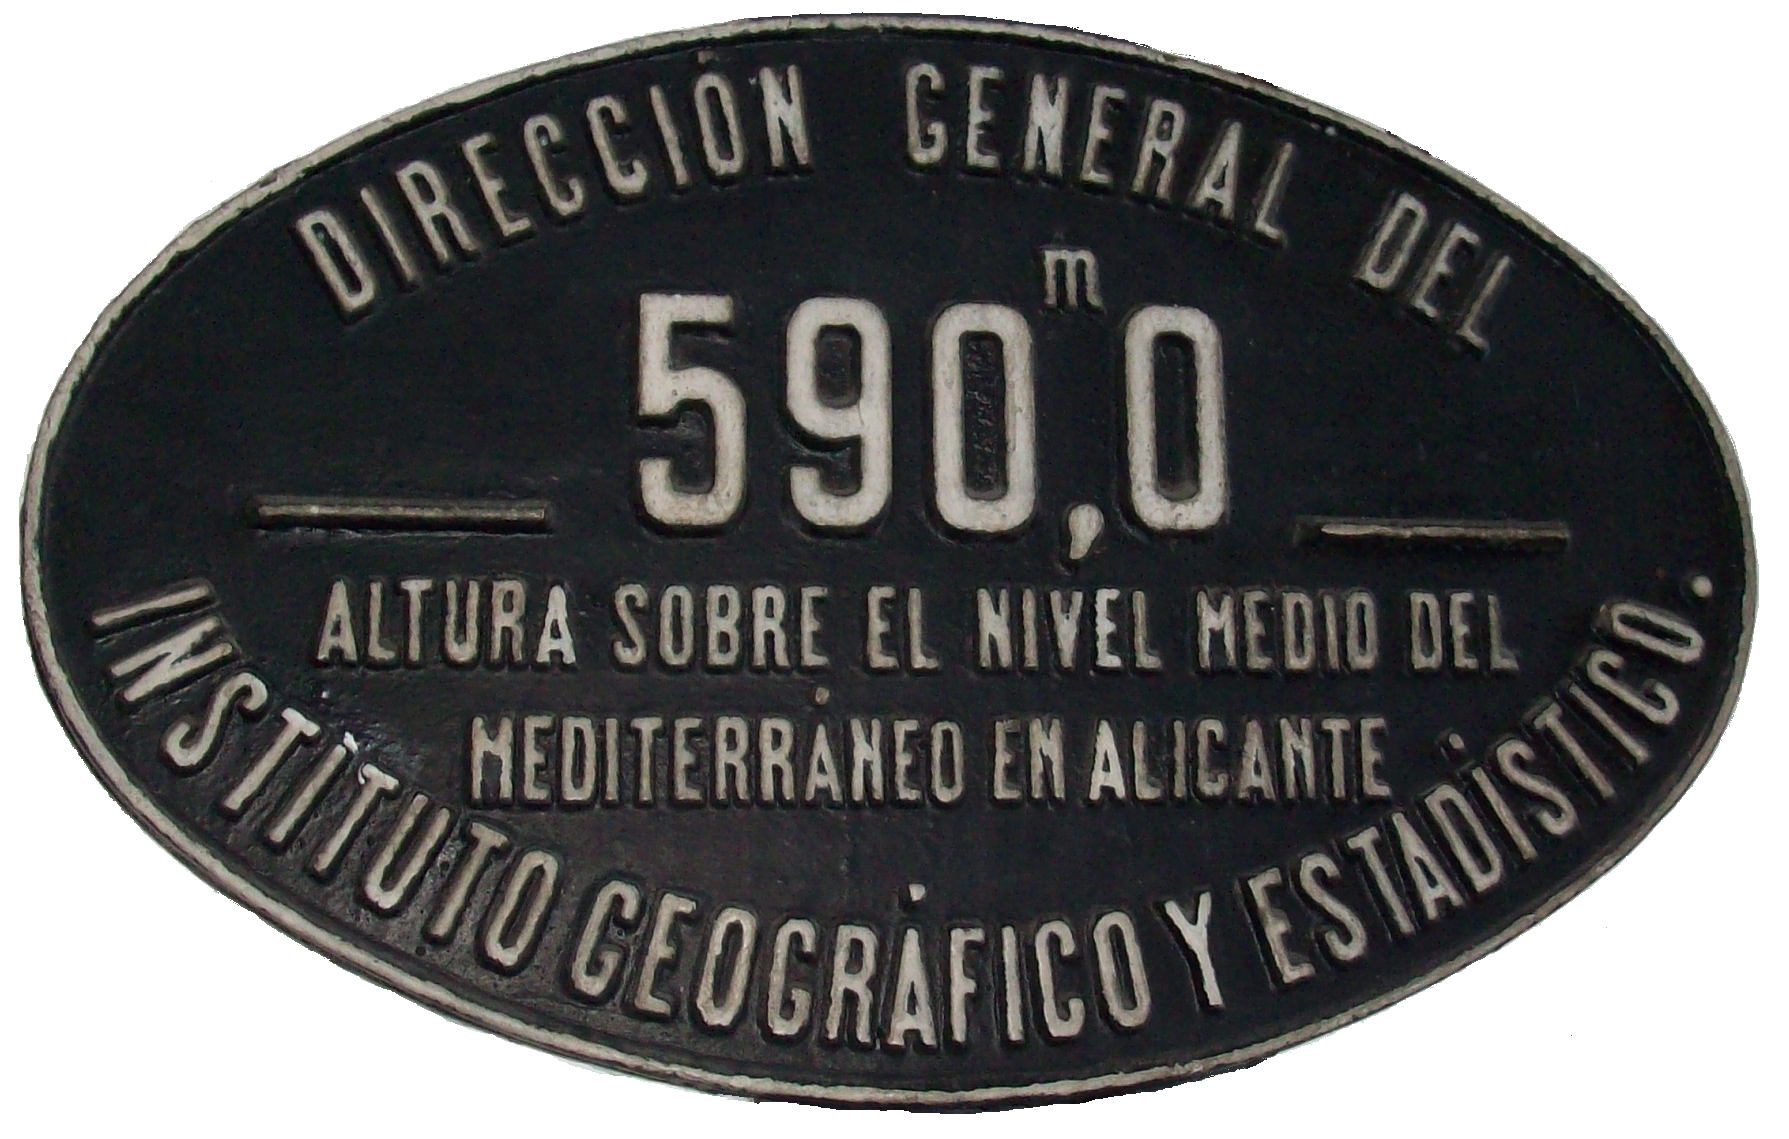 Placa de altitud de la estación de Madrid-Delicias